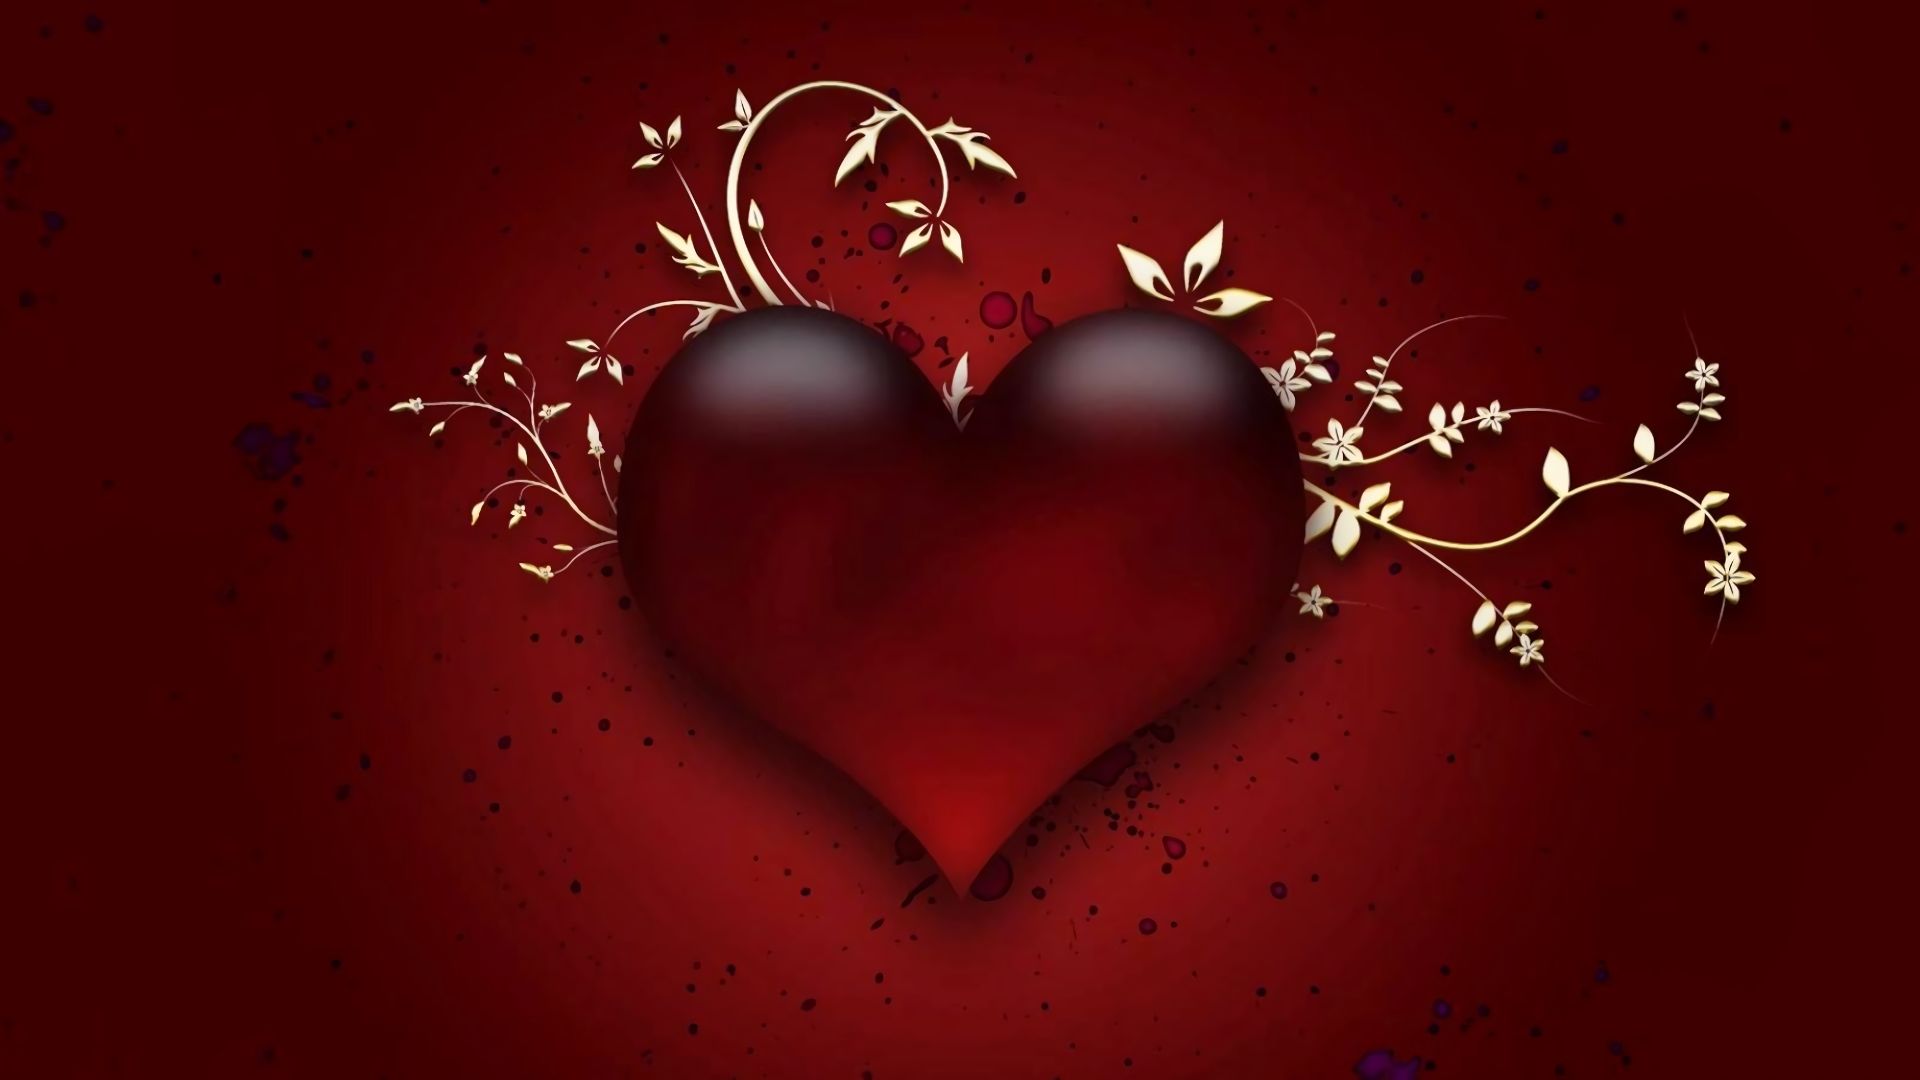 Скачать обои бесплатно Любовь, Красный, Дизайн, Сердце, Художественные картинка на рабочий стол ПК